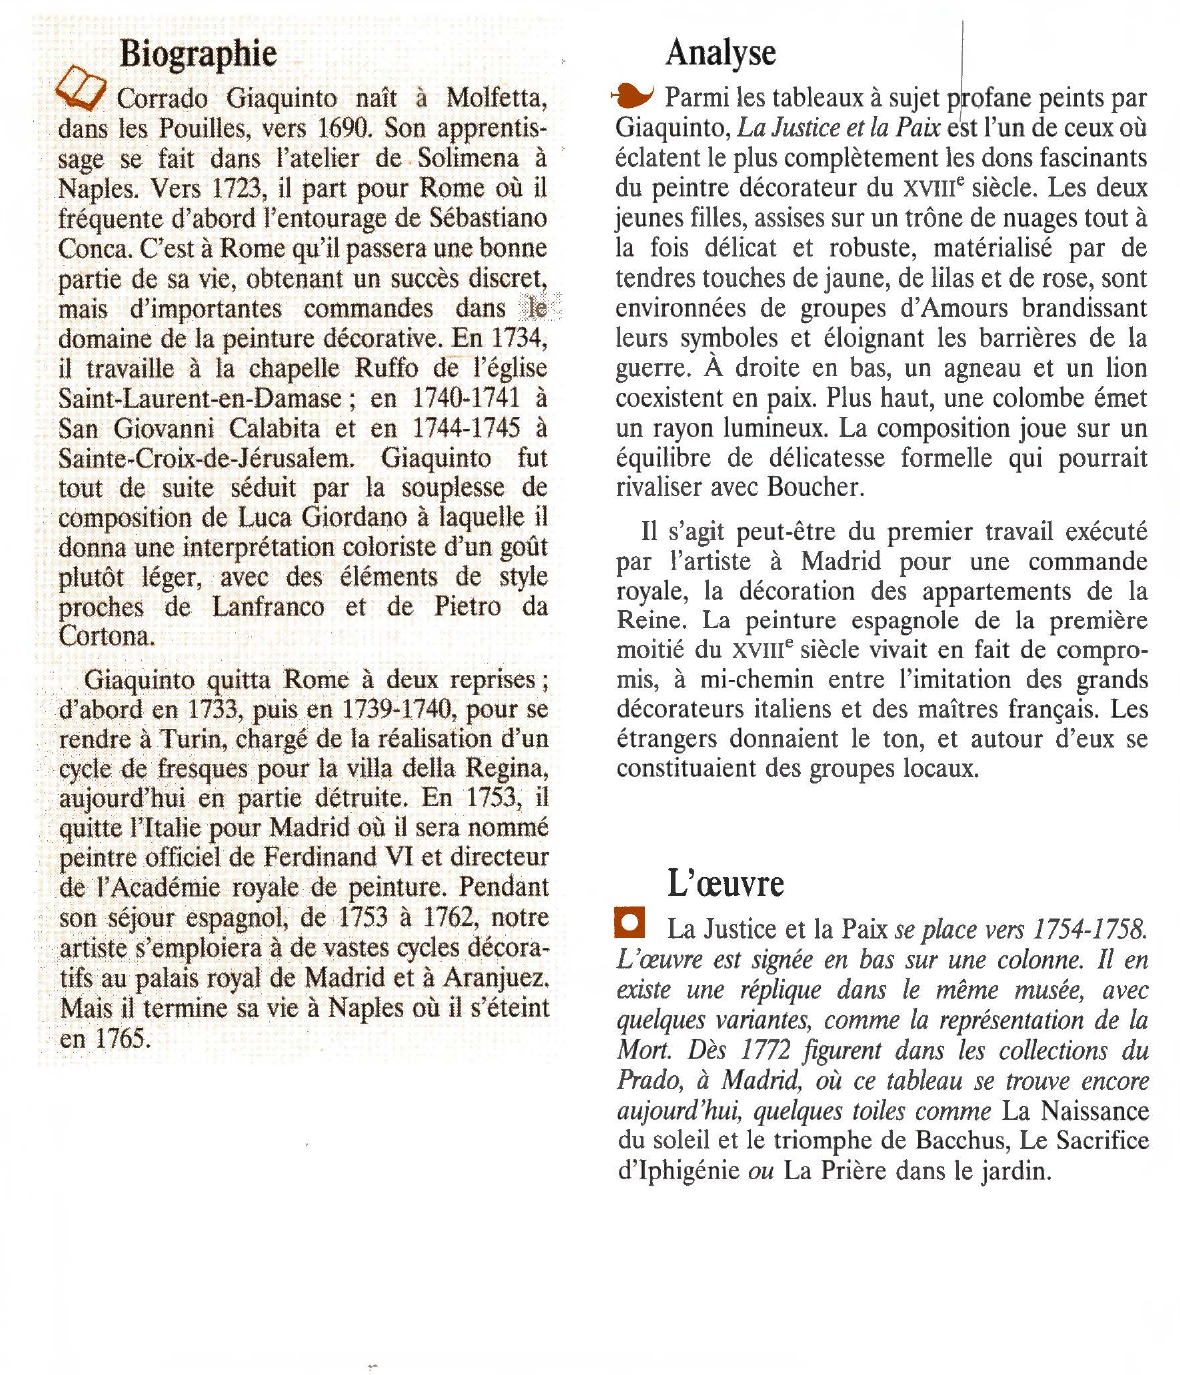 Prévisualisation du document LA JUSTICE ET LA PAIX de Corrado Giaquinto